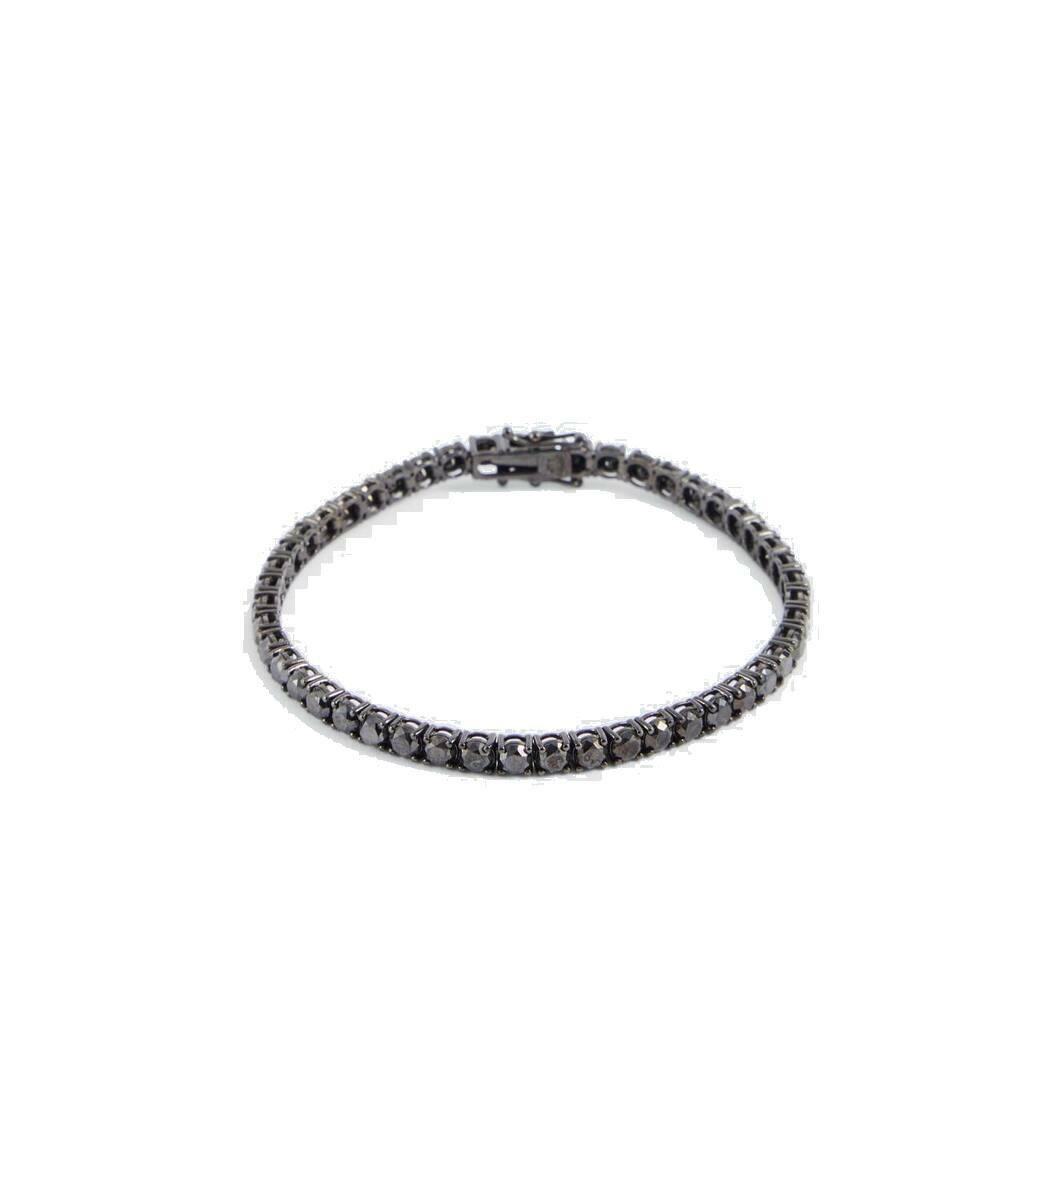 Photo: Shay Jewelry 18kt black gold tennis bracelet with diamonds